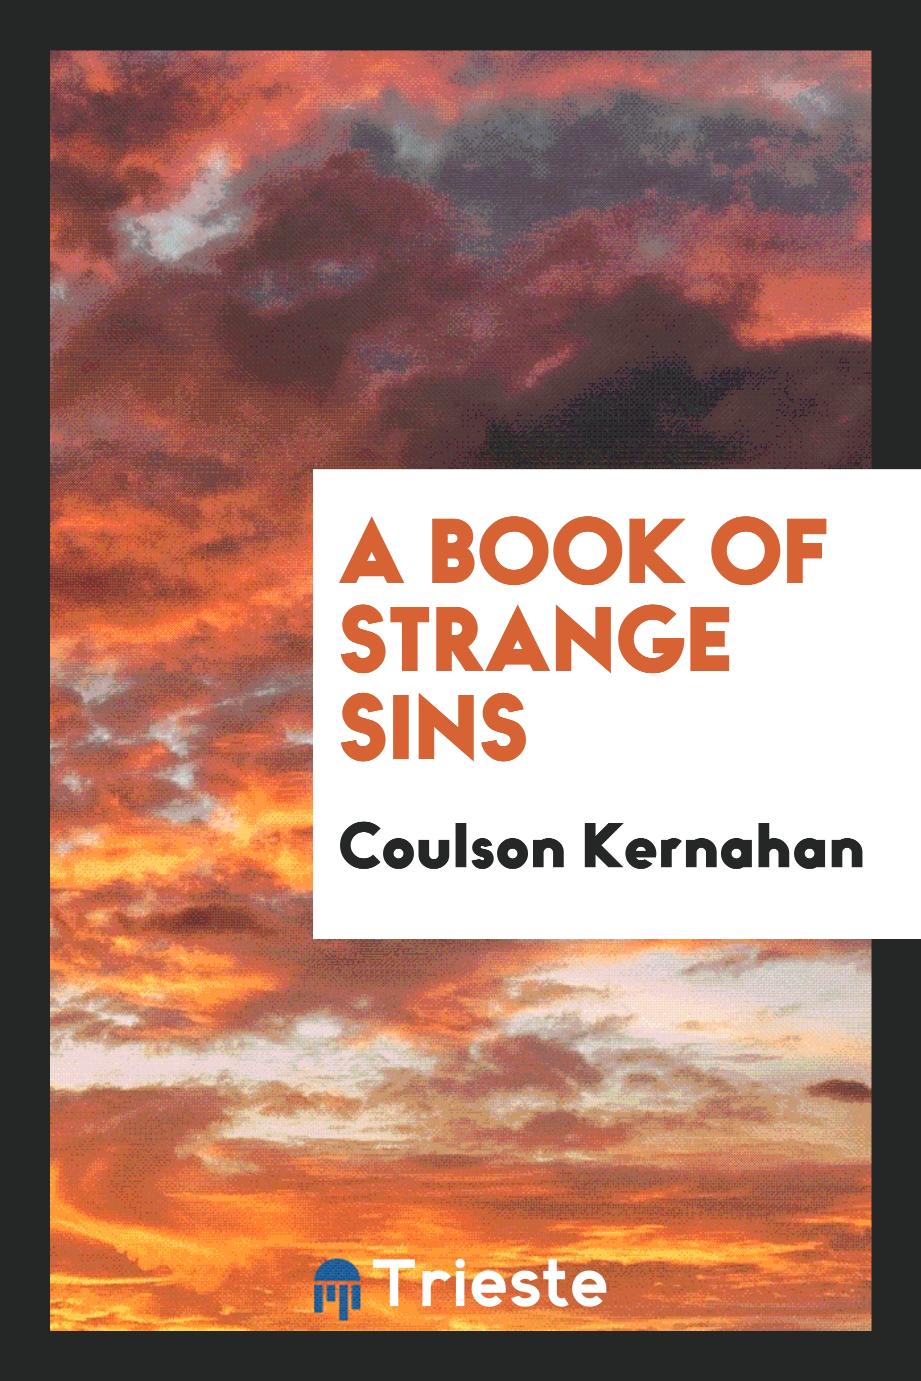 A book of strange sins